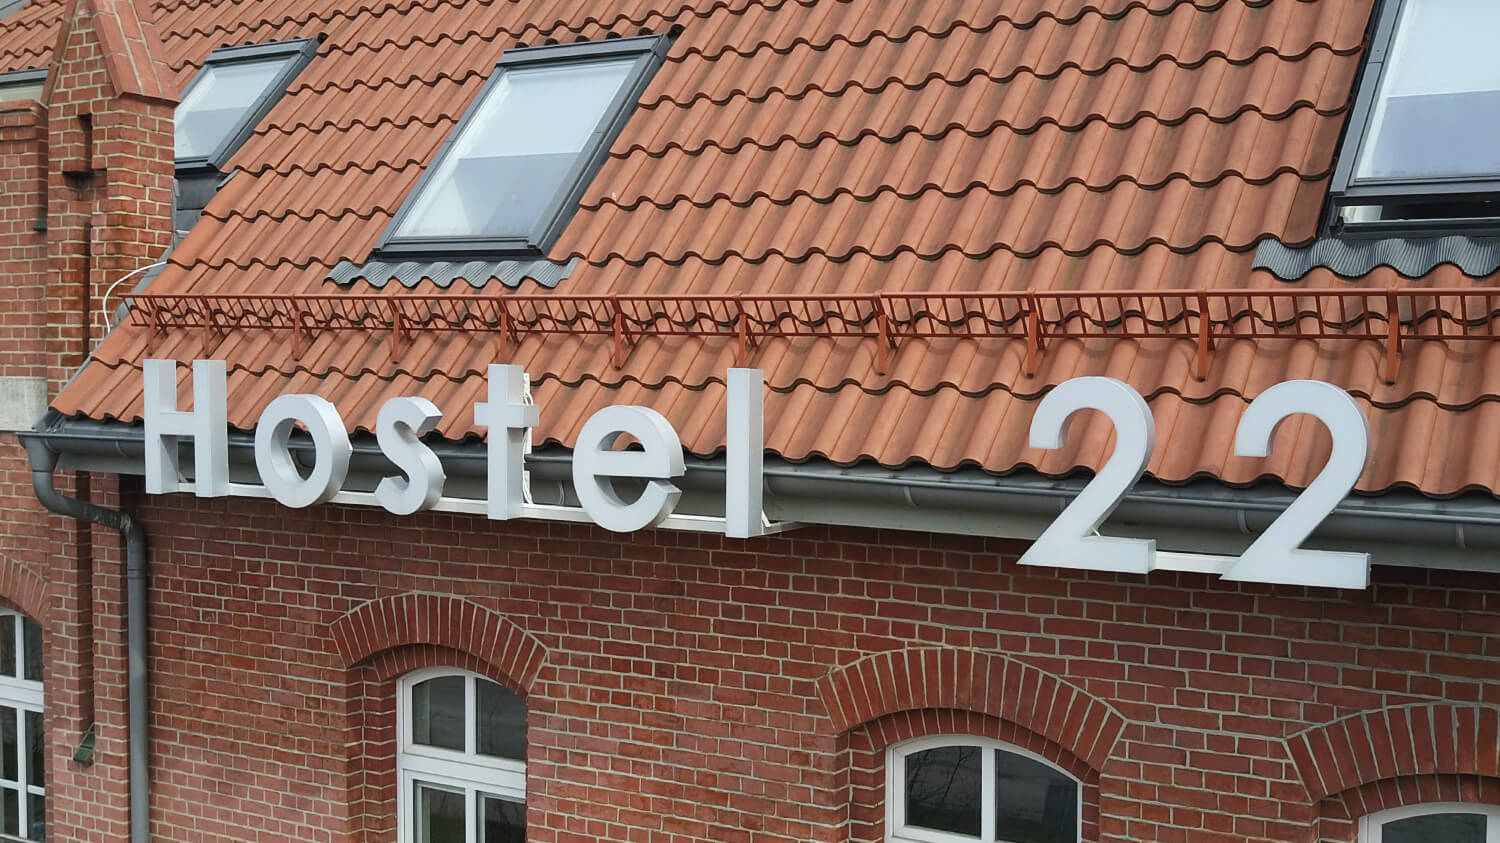 Hostel 22 - Hostel 22 - Lettres lumineuses spatiales sur le mur